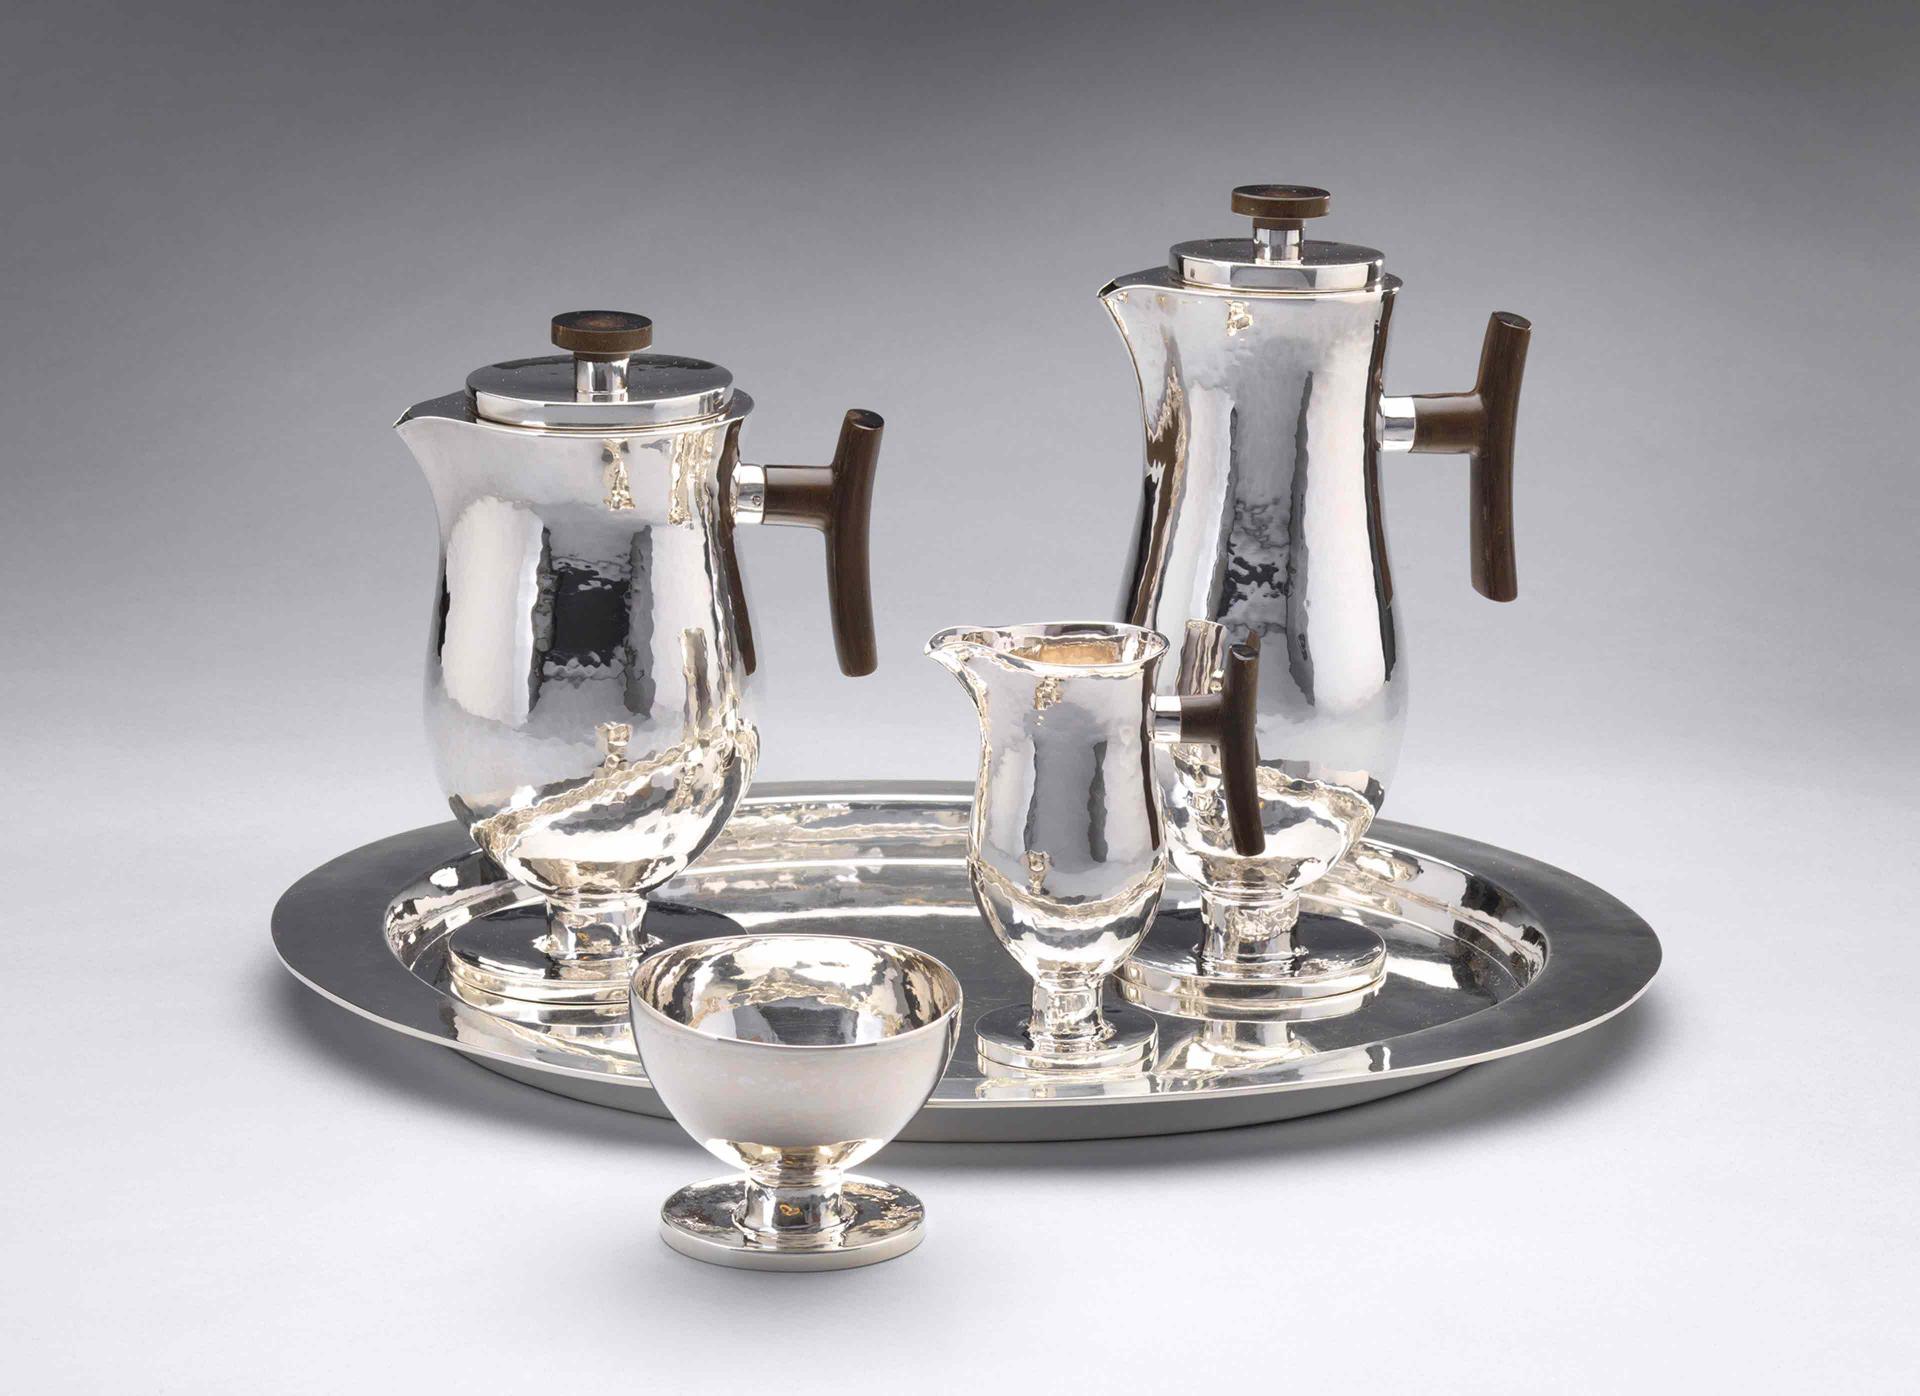 Silbernes Kaffee- und Teeservice bestehend aus Kaffeekanne, Teekanne, Sahnekännchen, Zuckerschale und Tablett